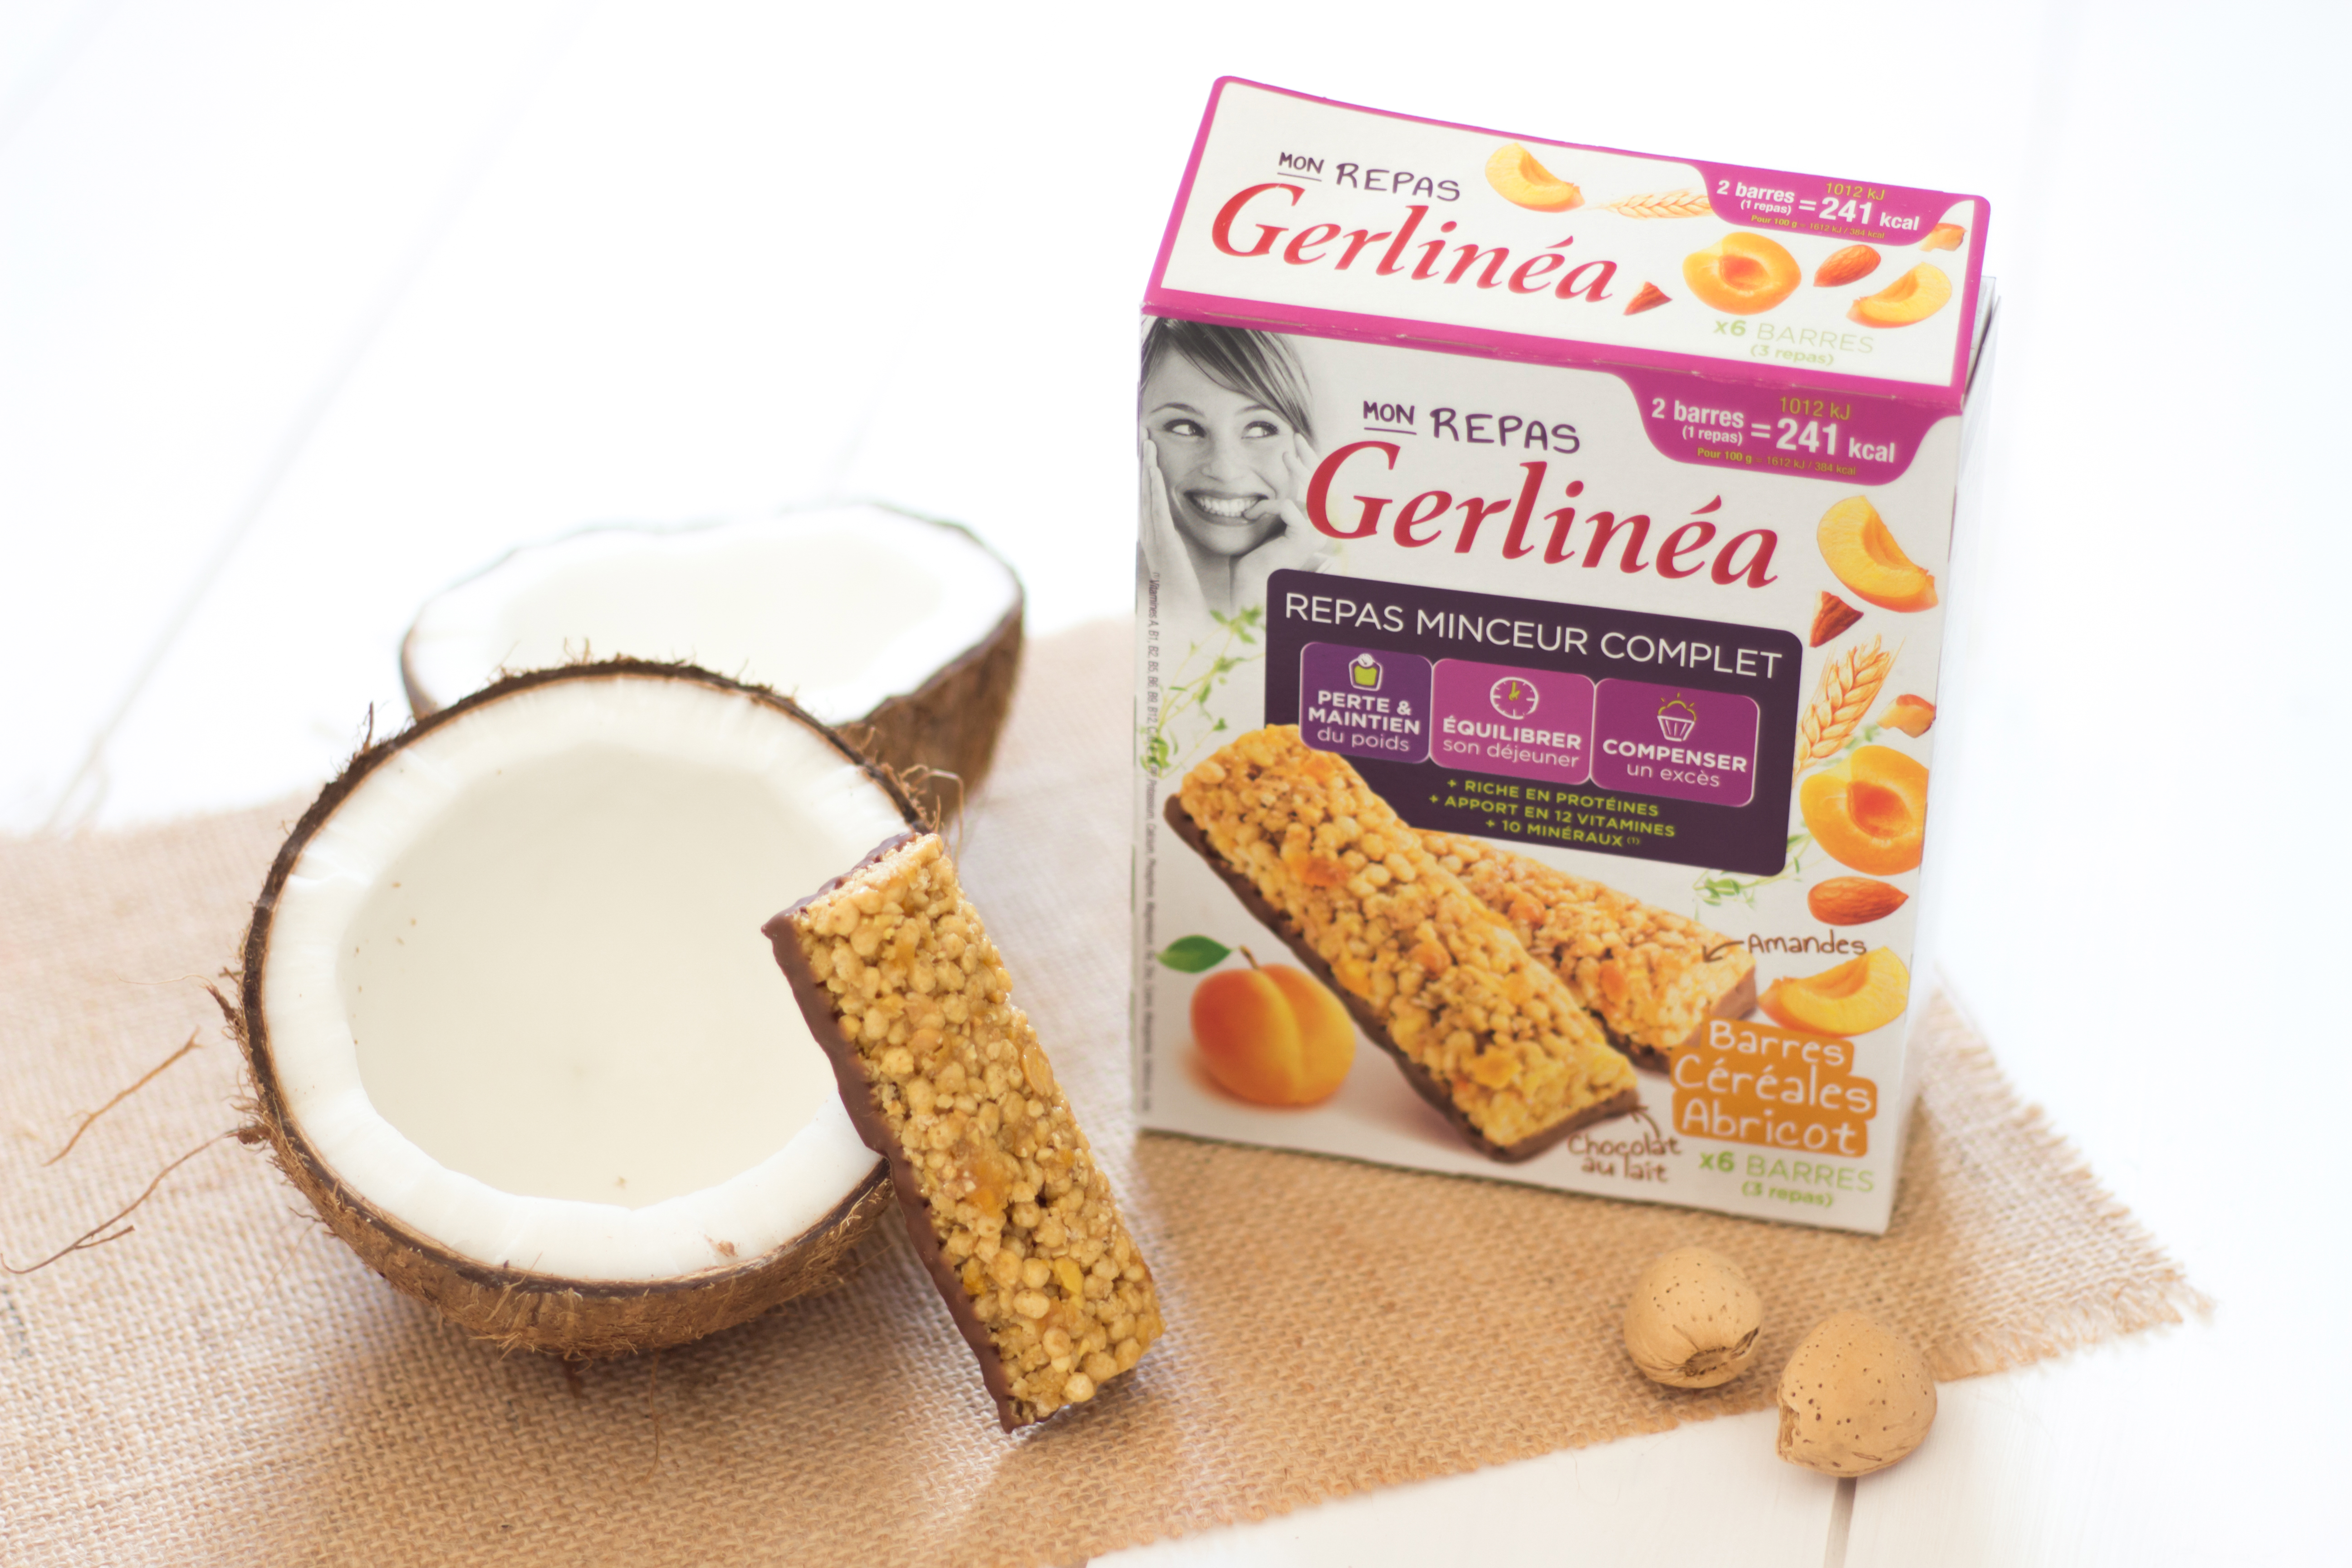 Substituts de repas: Les produits Gerlinea sont-ils efficaces ?